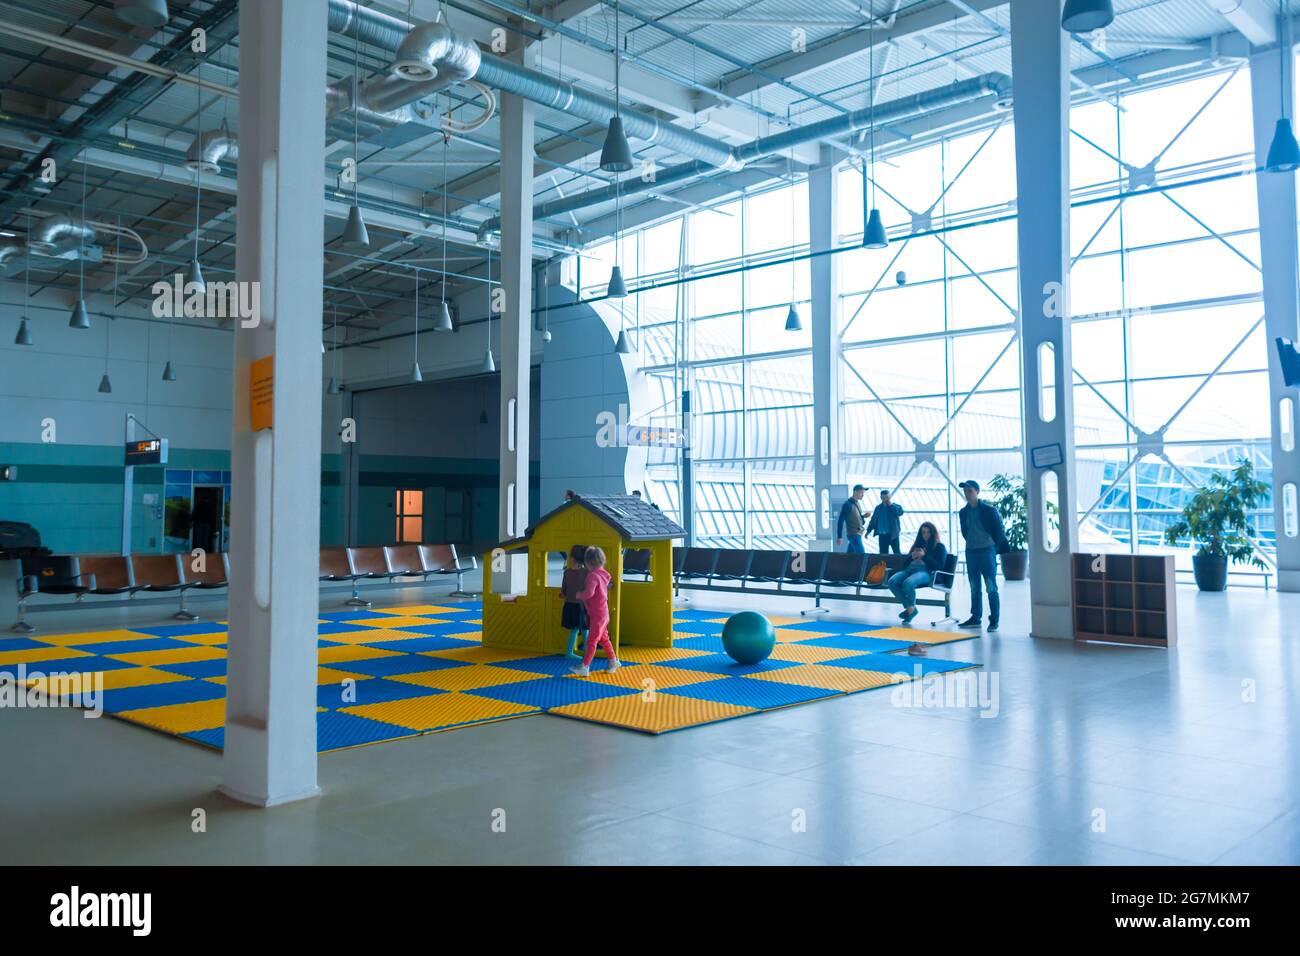 Kinderspielplatz in der Flughafenlounge. Unterhaltung für Kinder während des Wartens auf den Flug. Lviv, Ukraine - 05.15.2019 Stockfoto